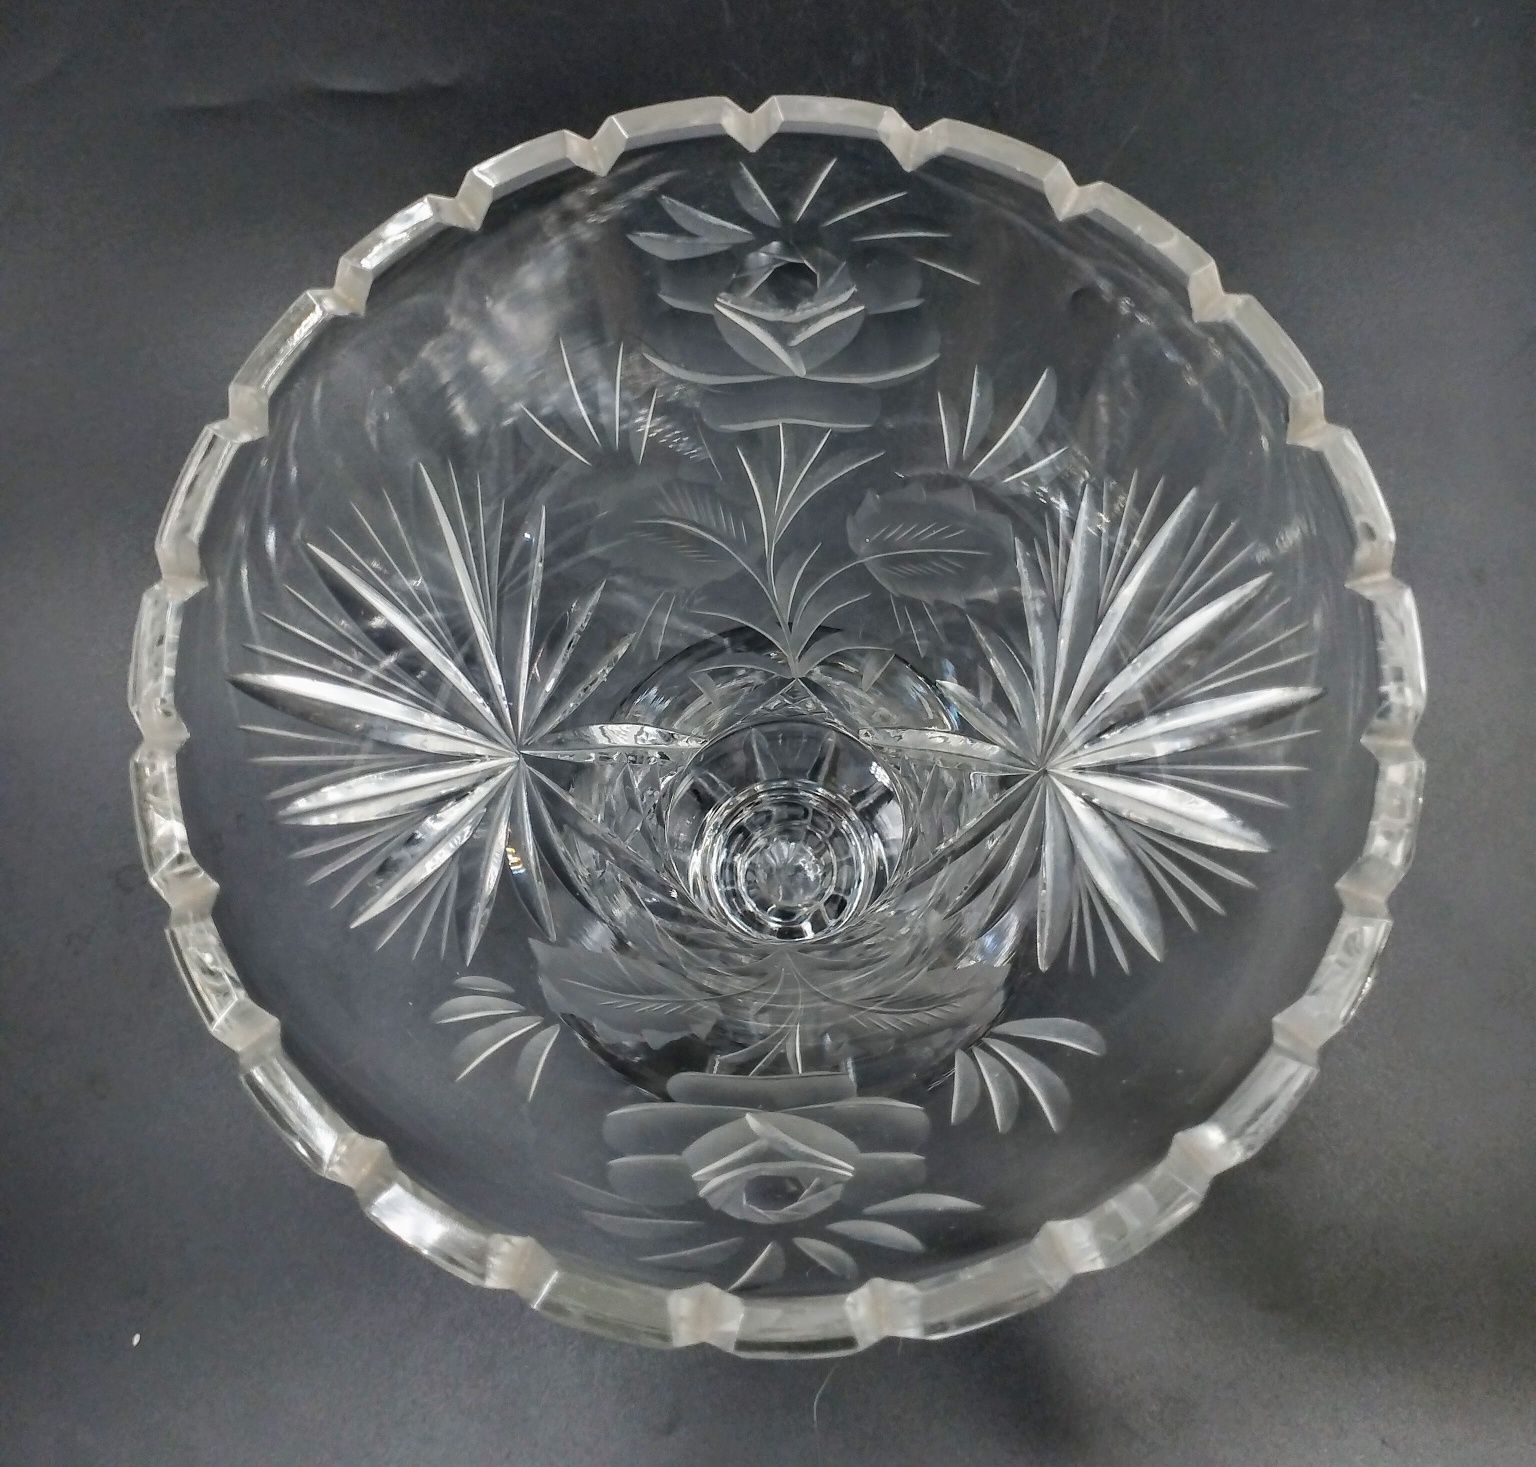 Wazon kryształ szkło kryształowy kwiwty antyk retro PRL 60te design